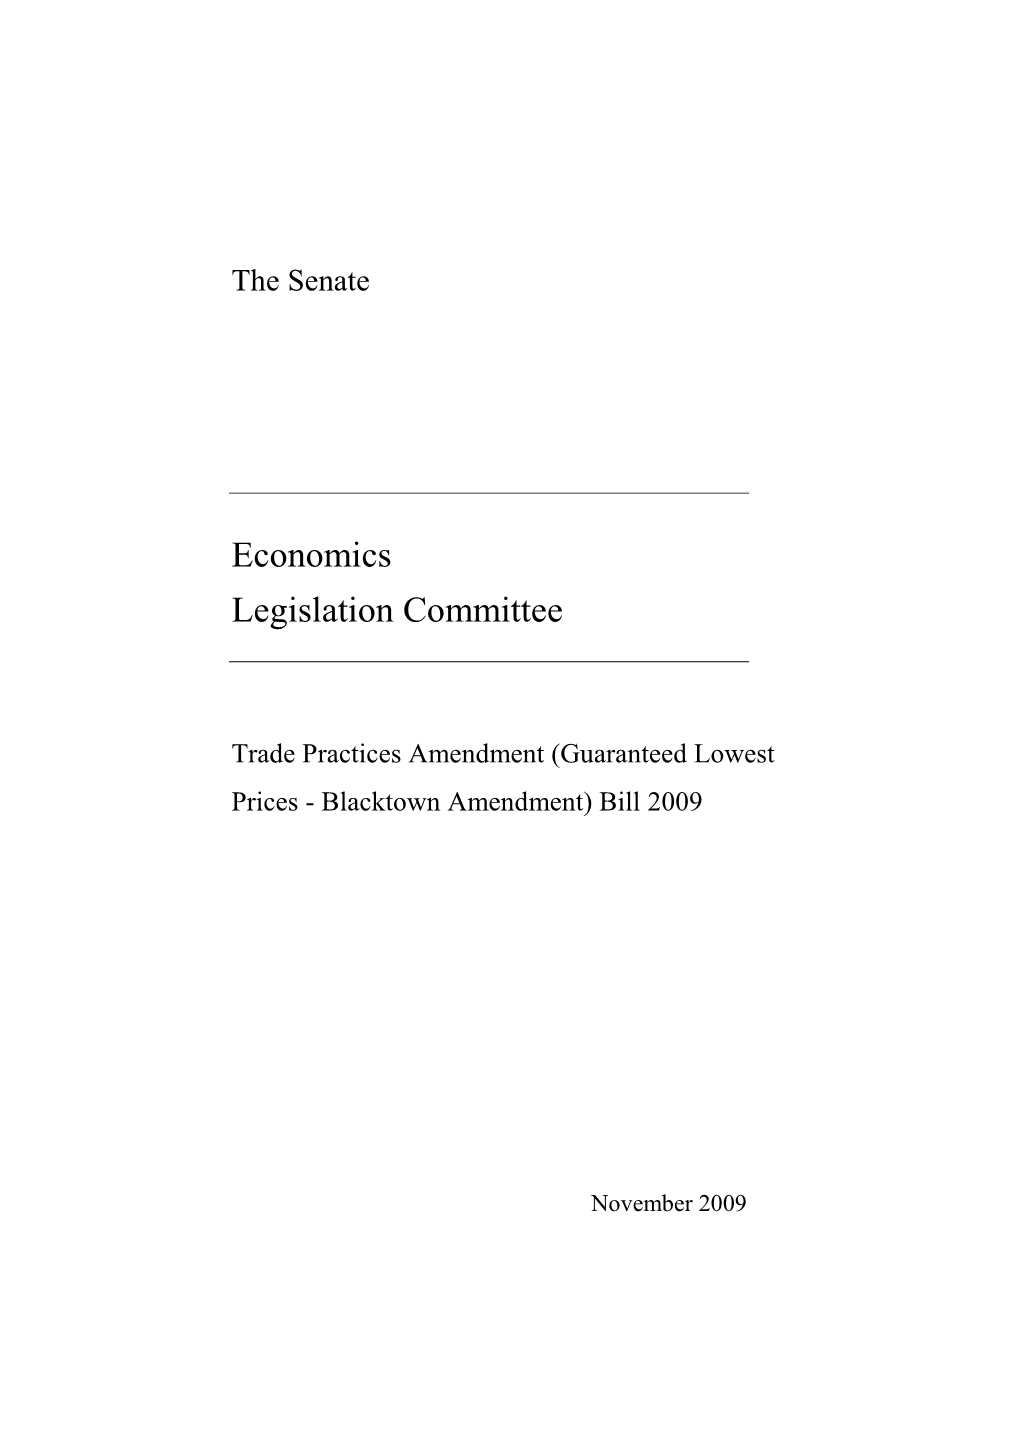 Senate Committee Report